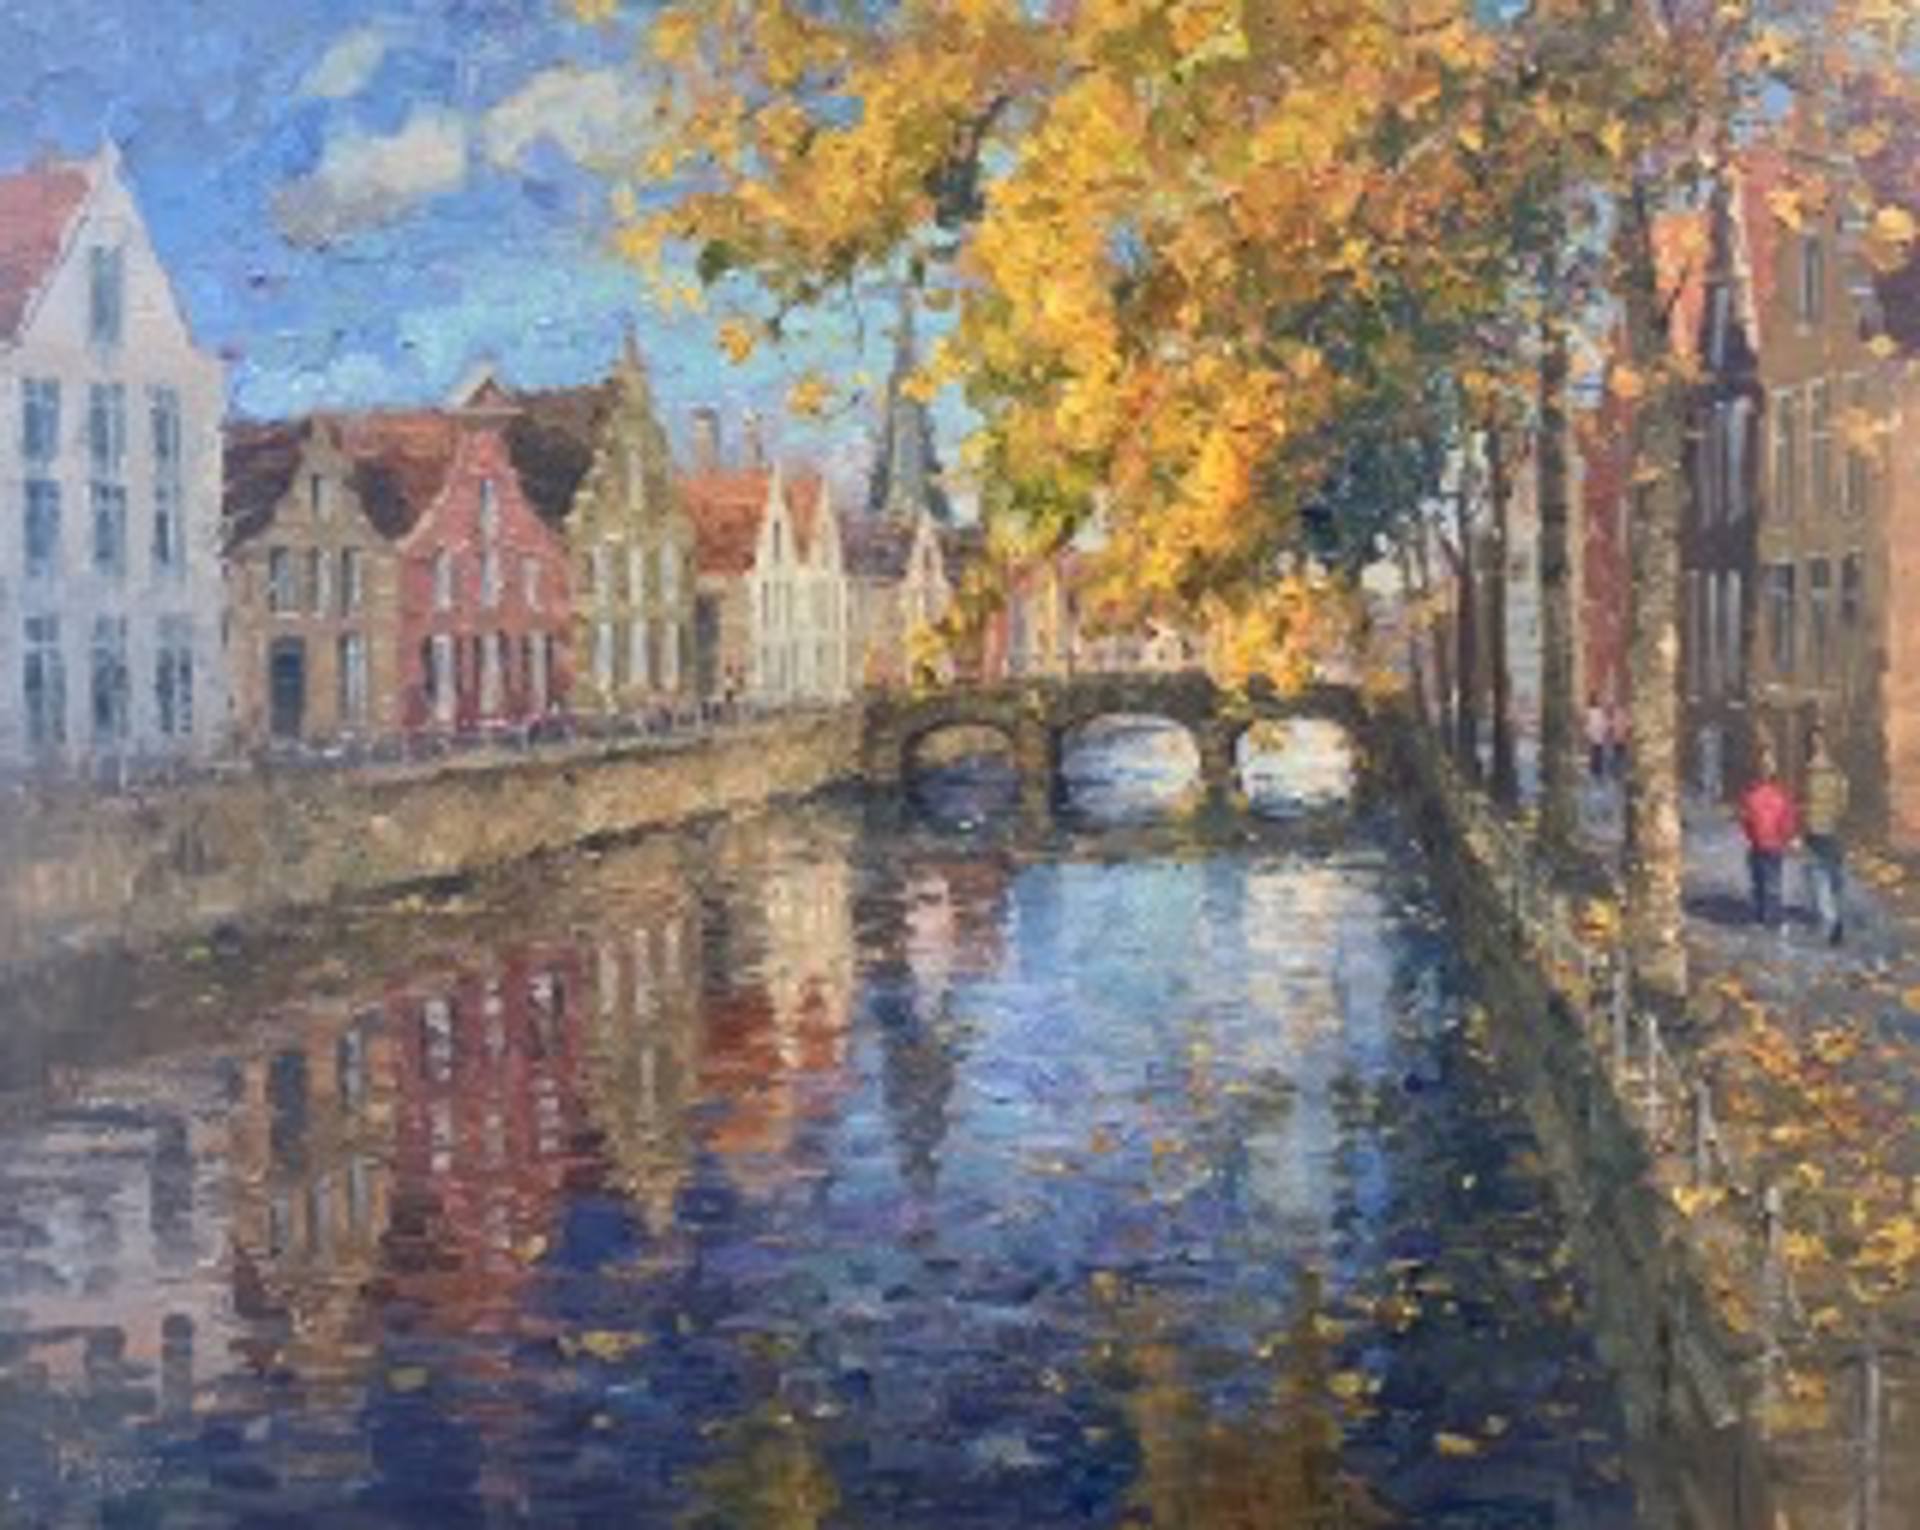 Autumn in Bruges by EJ Paprocki